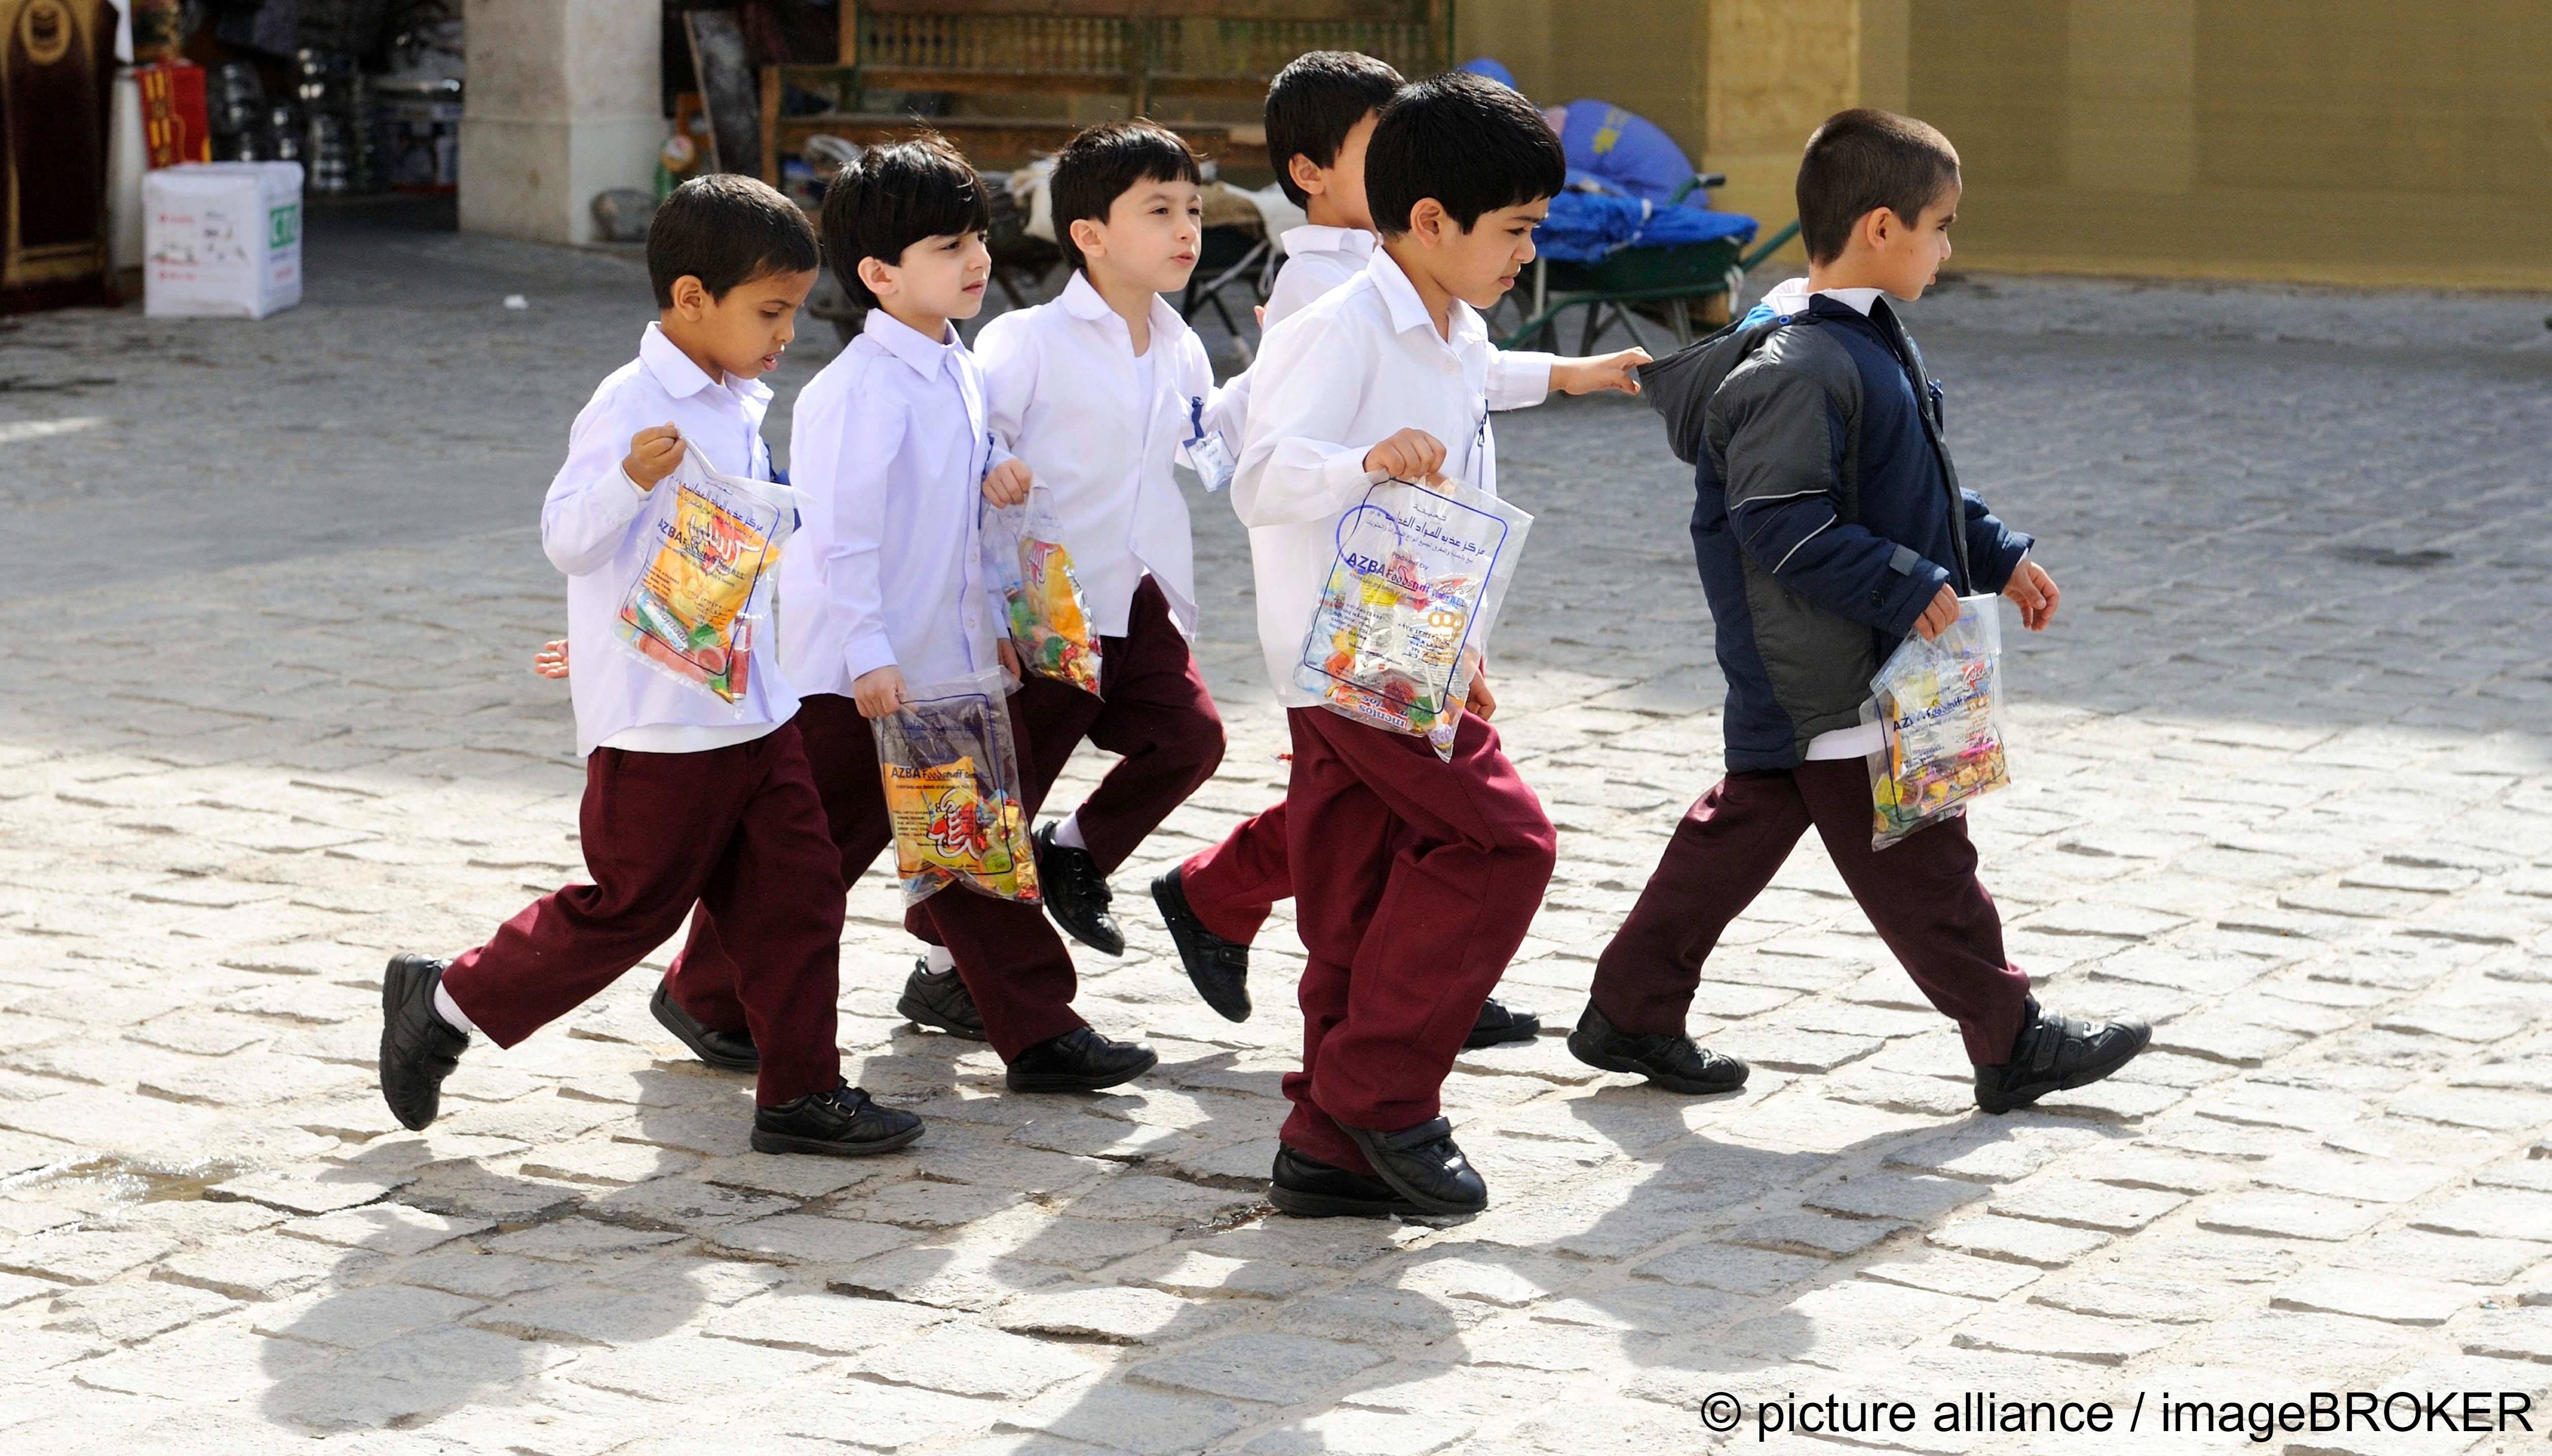 تلاميذ مرتدون الزي المدرسي في الدوحة - قطر. 